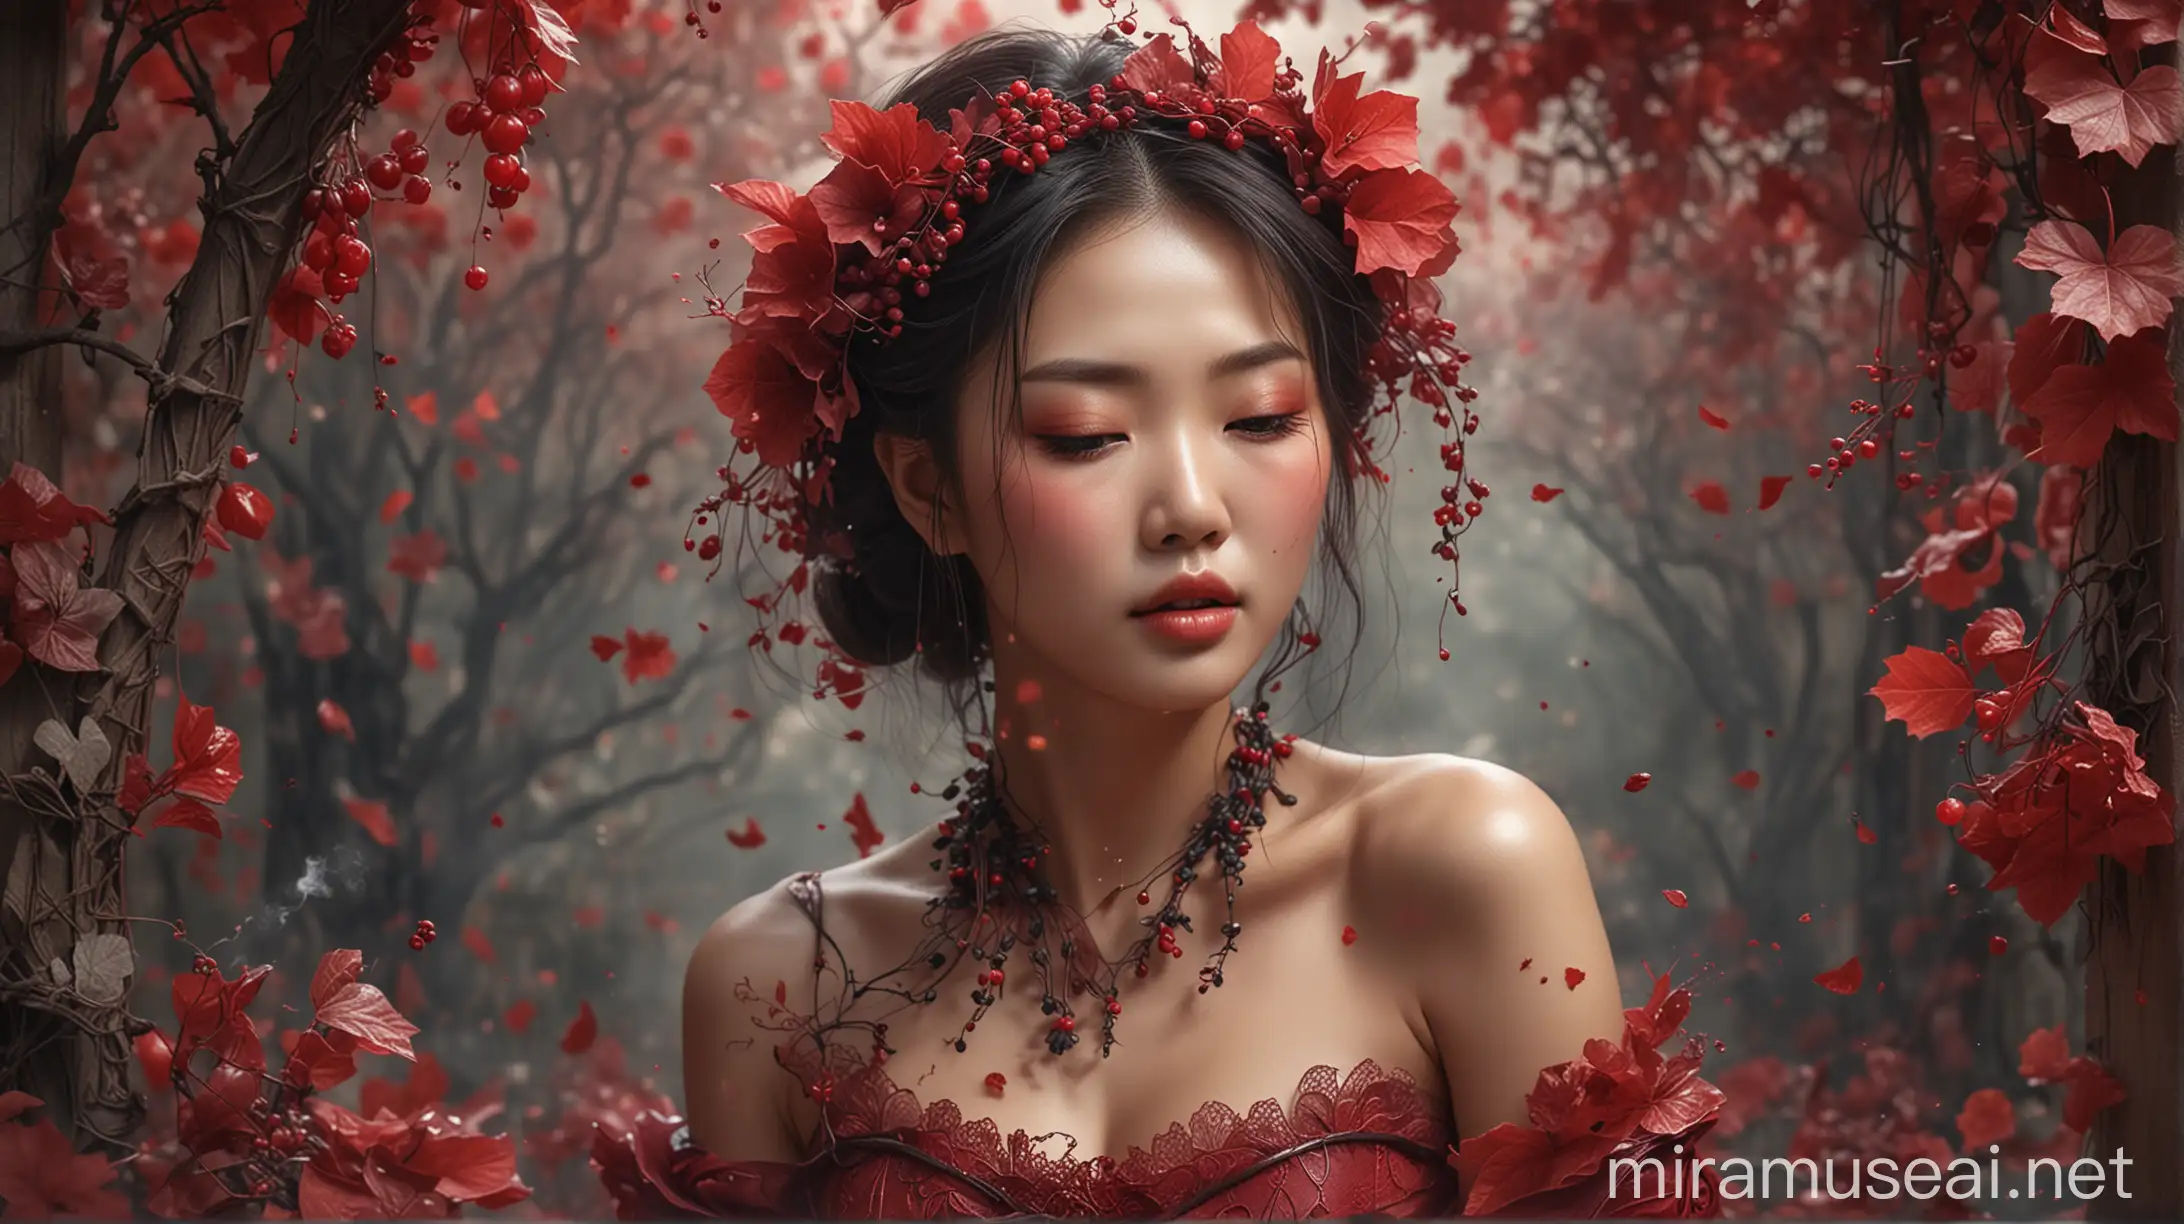 wanita cantik Korea, yang terbuat dari bunga kembang sepatu merah anggur dengan kelopak tipis dan transparan, di antara dedaunan dan semak-semak, dengan asap dan debu kedipan peri, fantasi dan suasana melamun sebagai latar belakang. gaya fantasi, warna-warna cerah, realistis ultra HDR extreme original face 